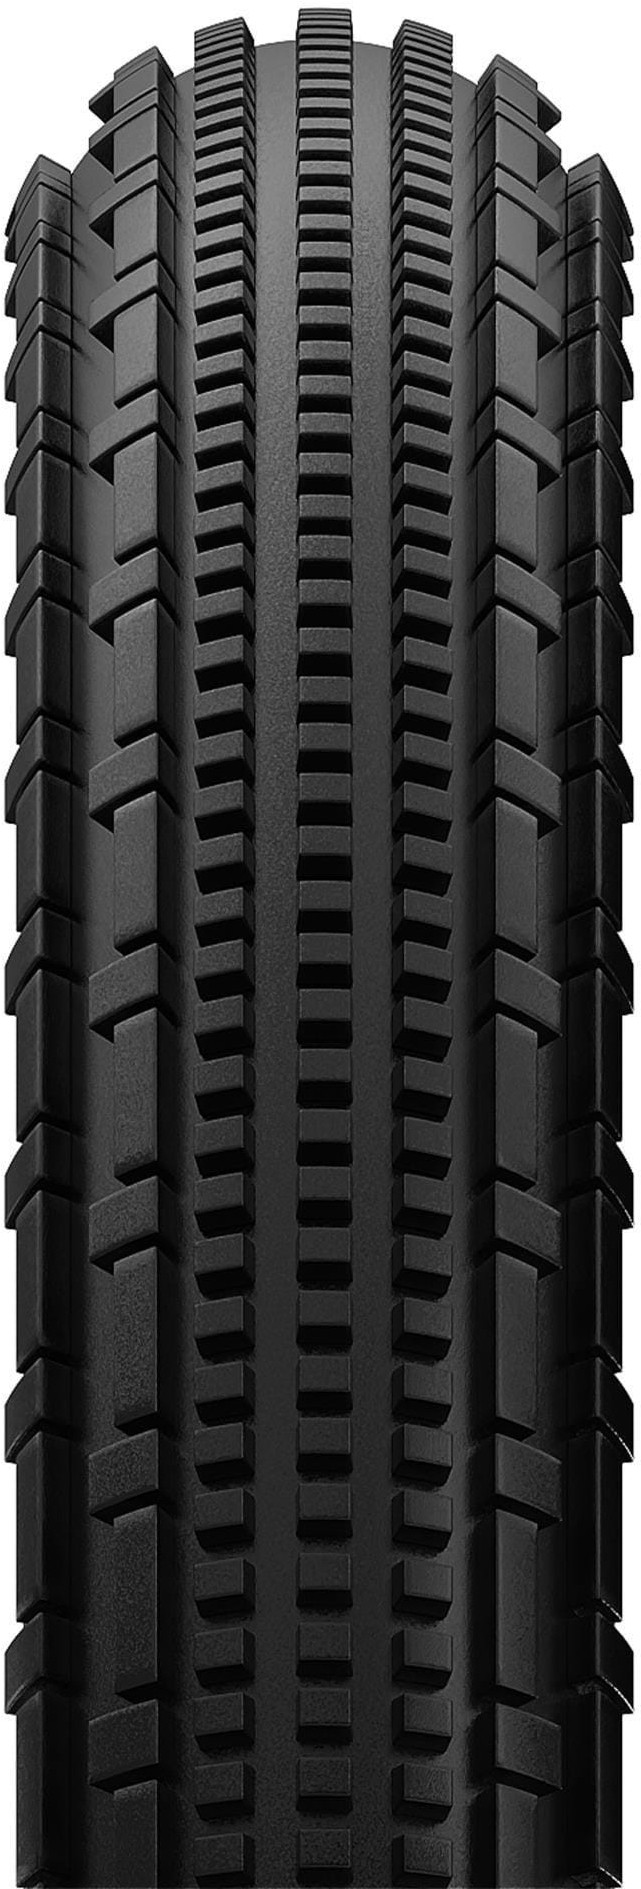 Gravelking SK 700c Gravel Tyre image 1